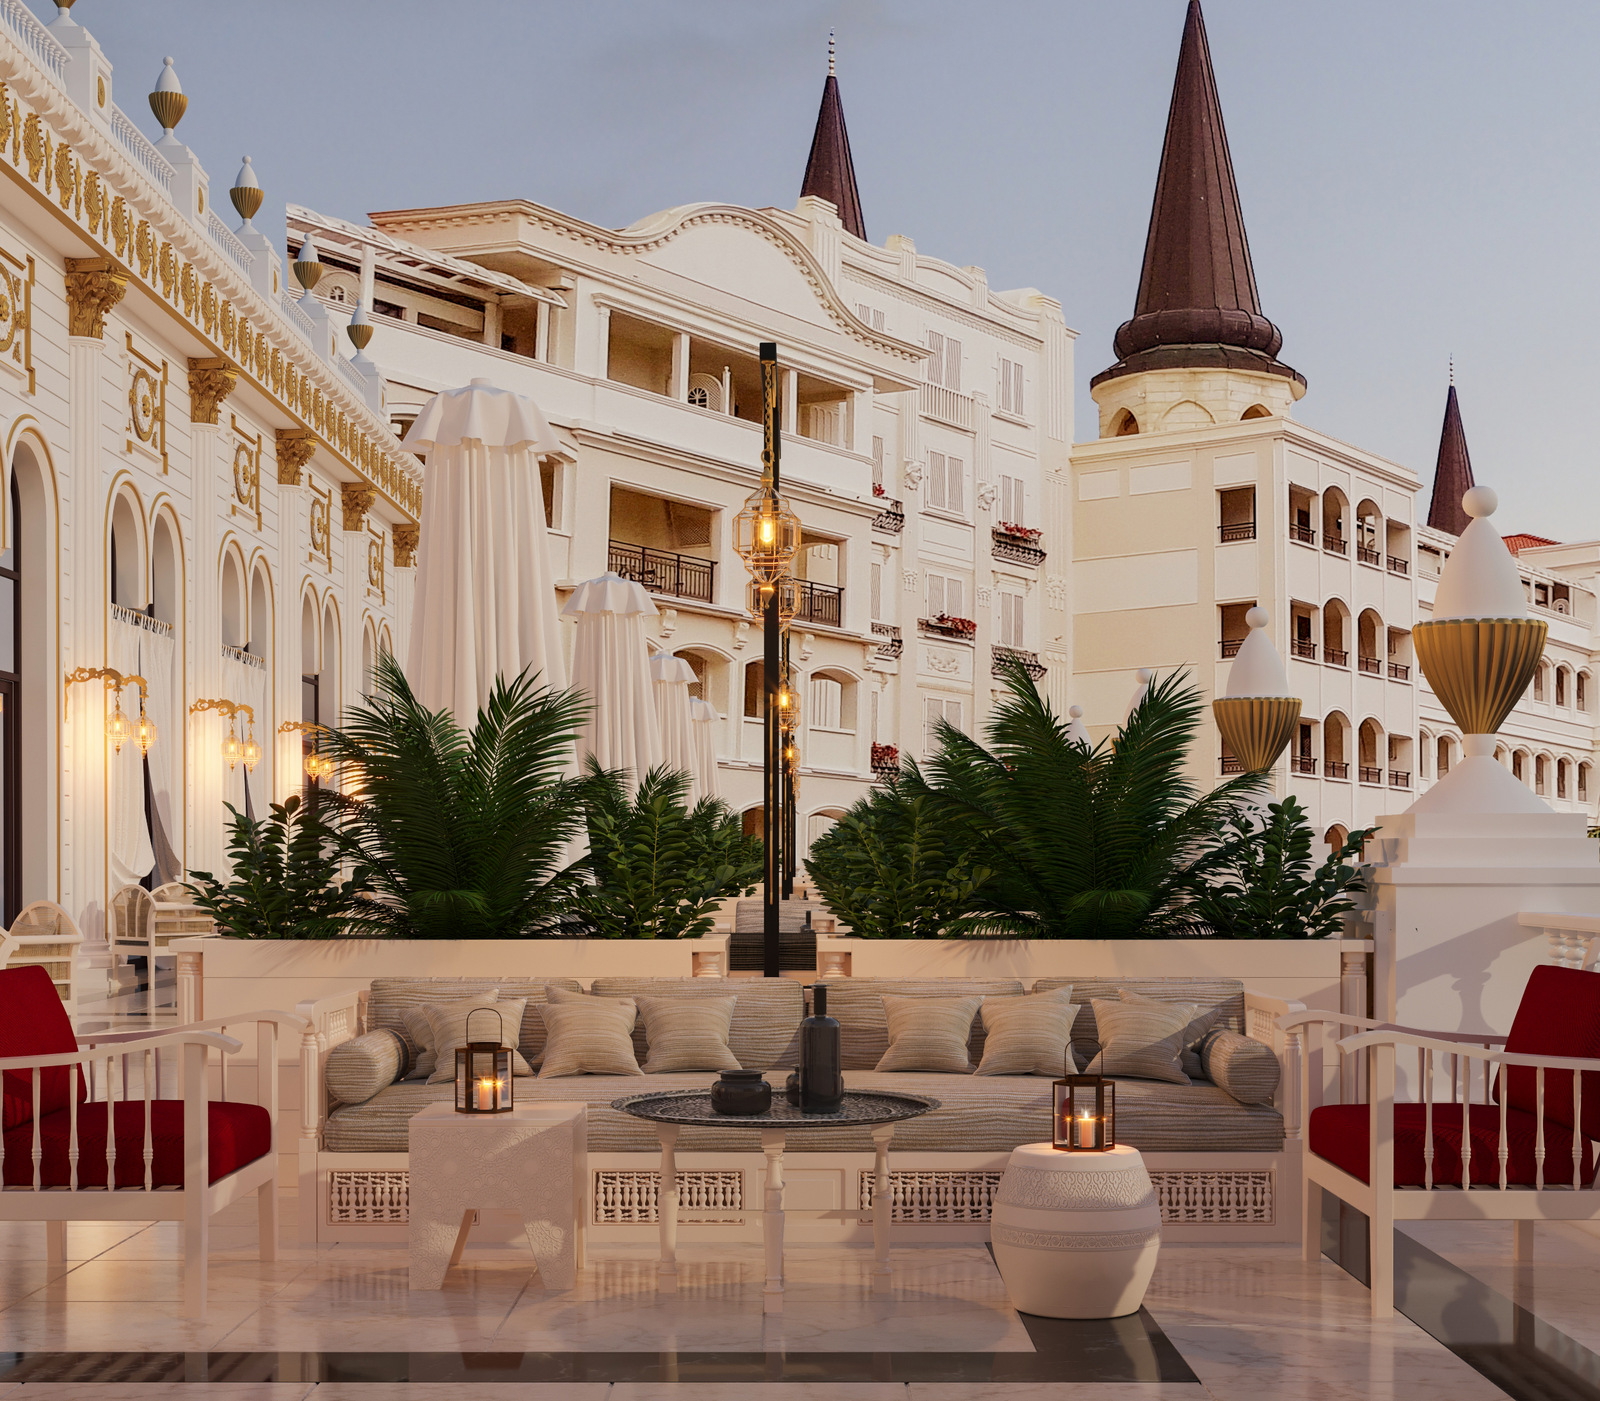 Обновленный отель Mardan Palace в Турции откроется фестивалем Coral Travel May Fest